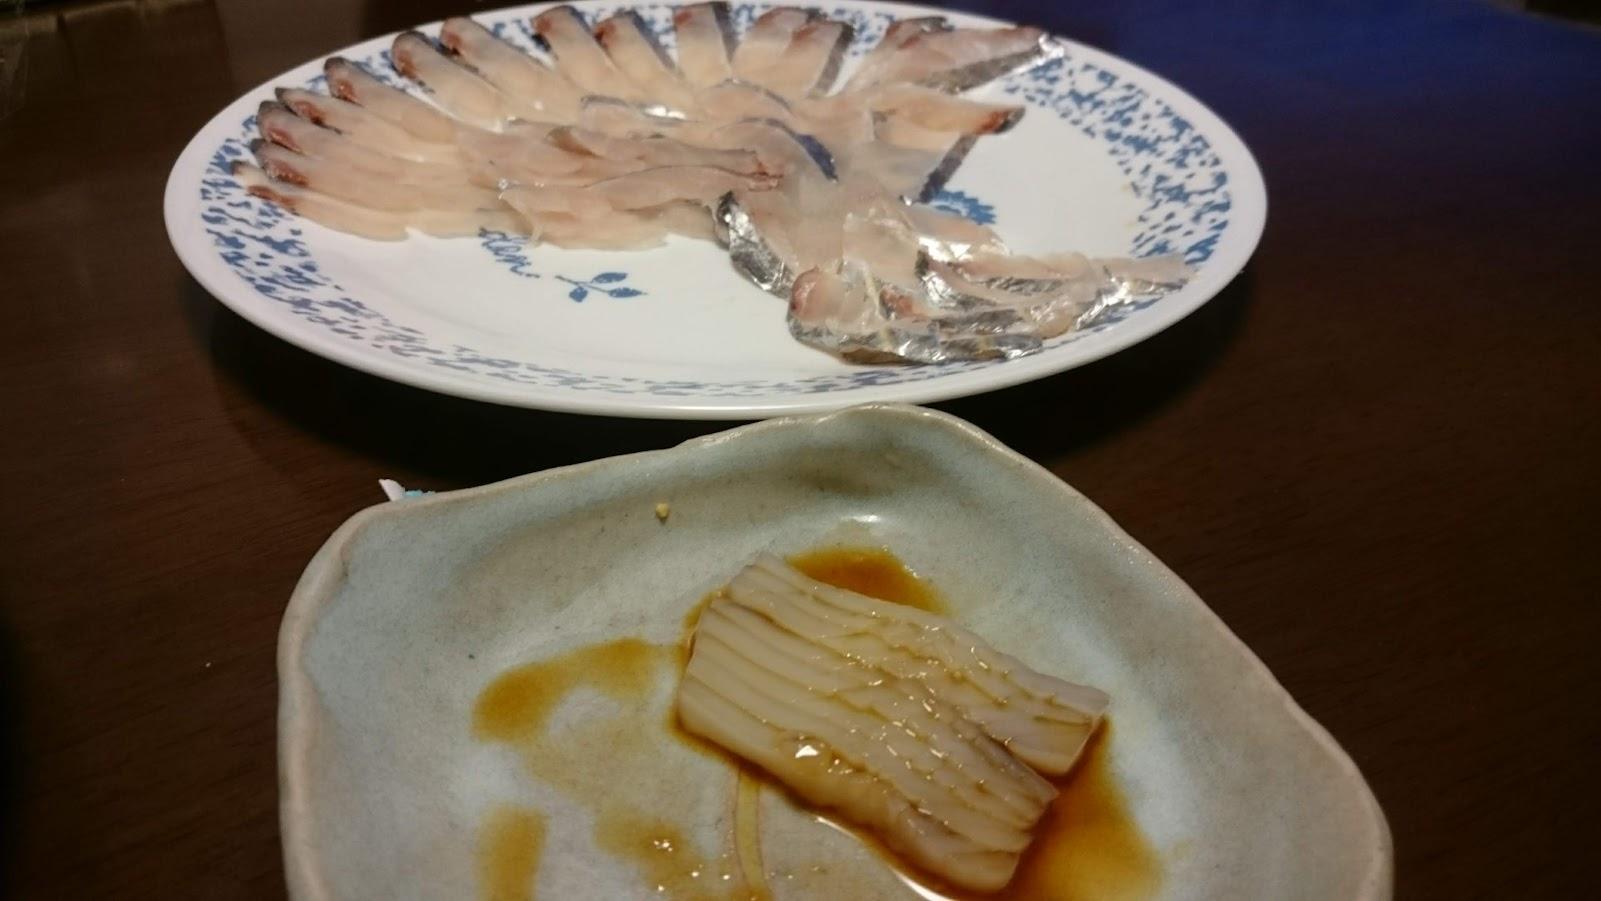 アオリイカは昨日の太刀魚と一緒に刺身で頂きました。
どっちも少し甘みがあって美味しいです。